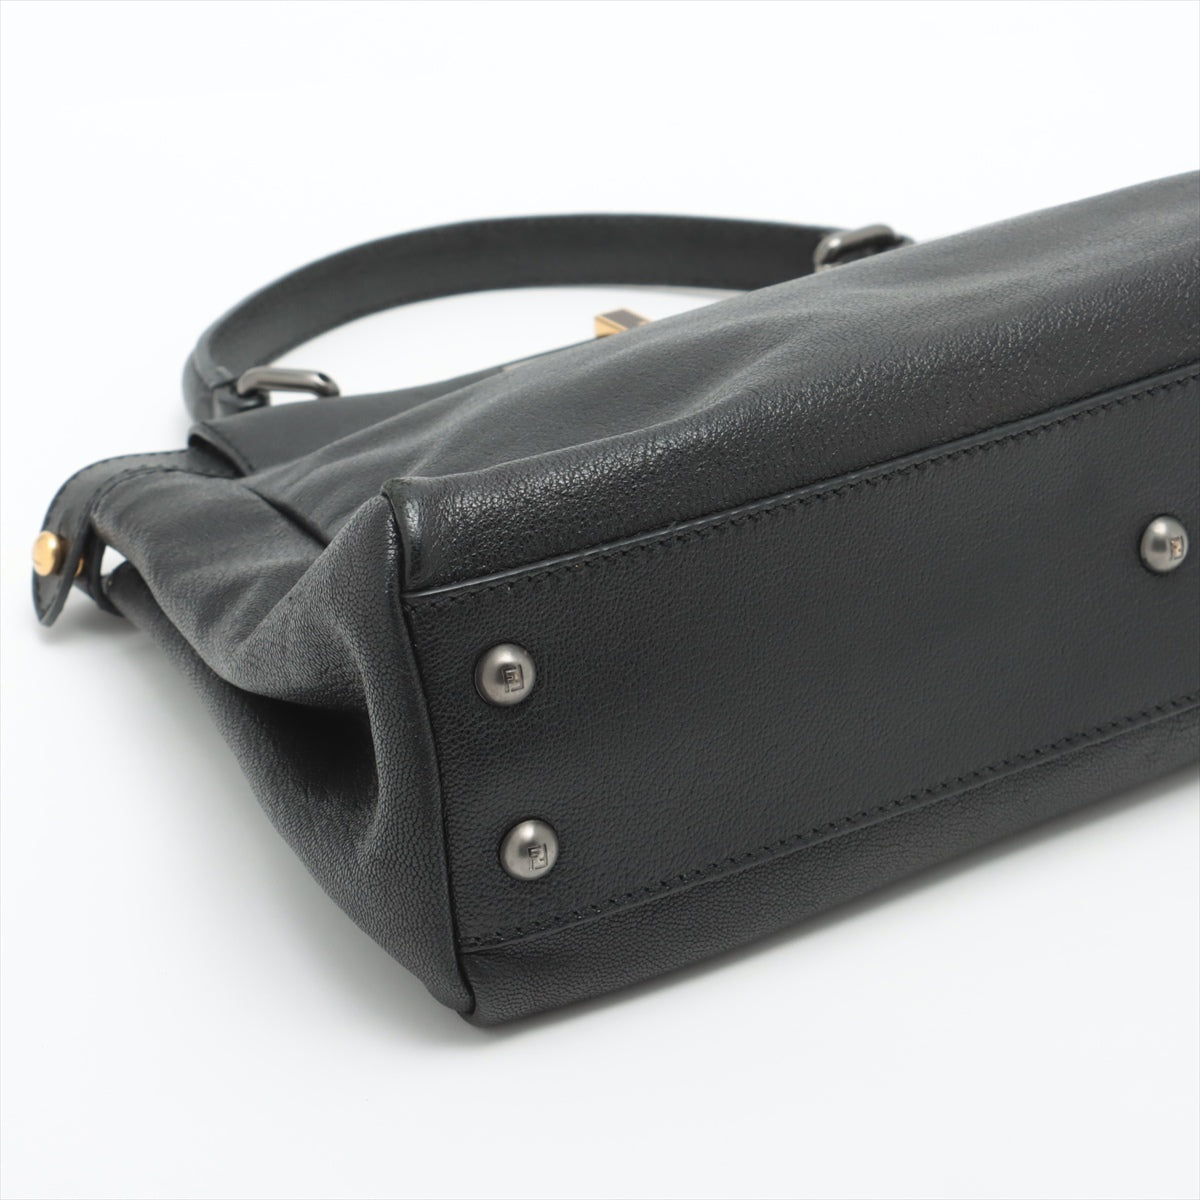 Fendi Peek-a-boo Leather Hand bag Black 8BN211   Turn lock noise